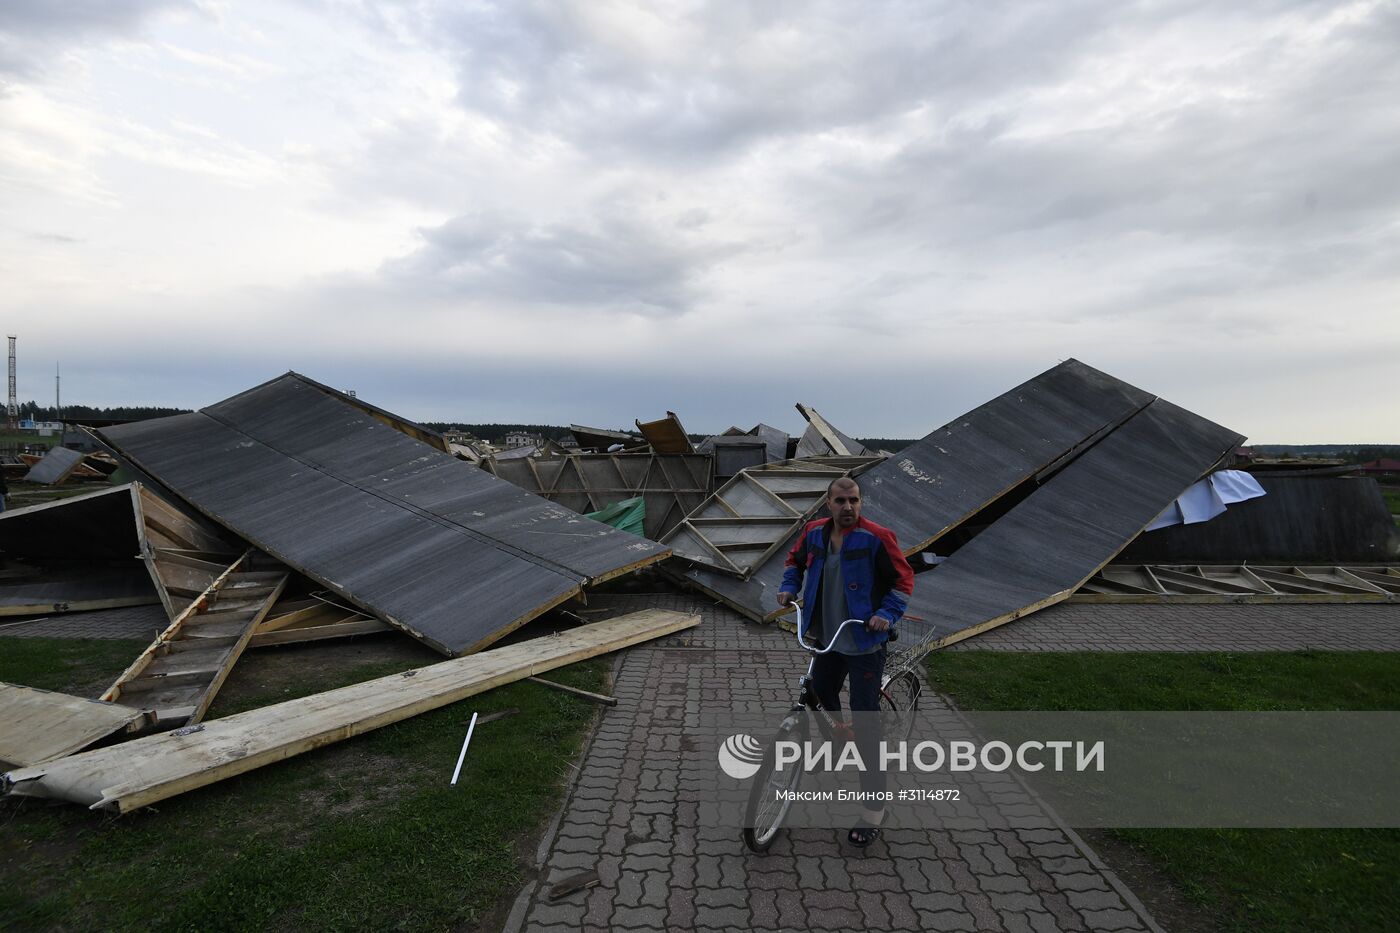 Пирамида Голода на Новорижском шоссе разрушена ураганом